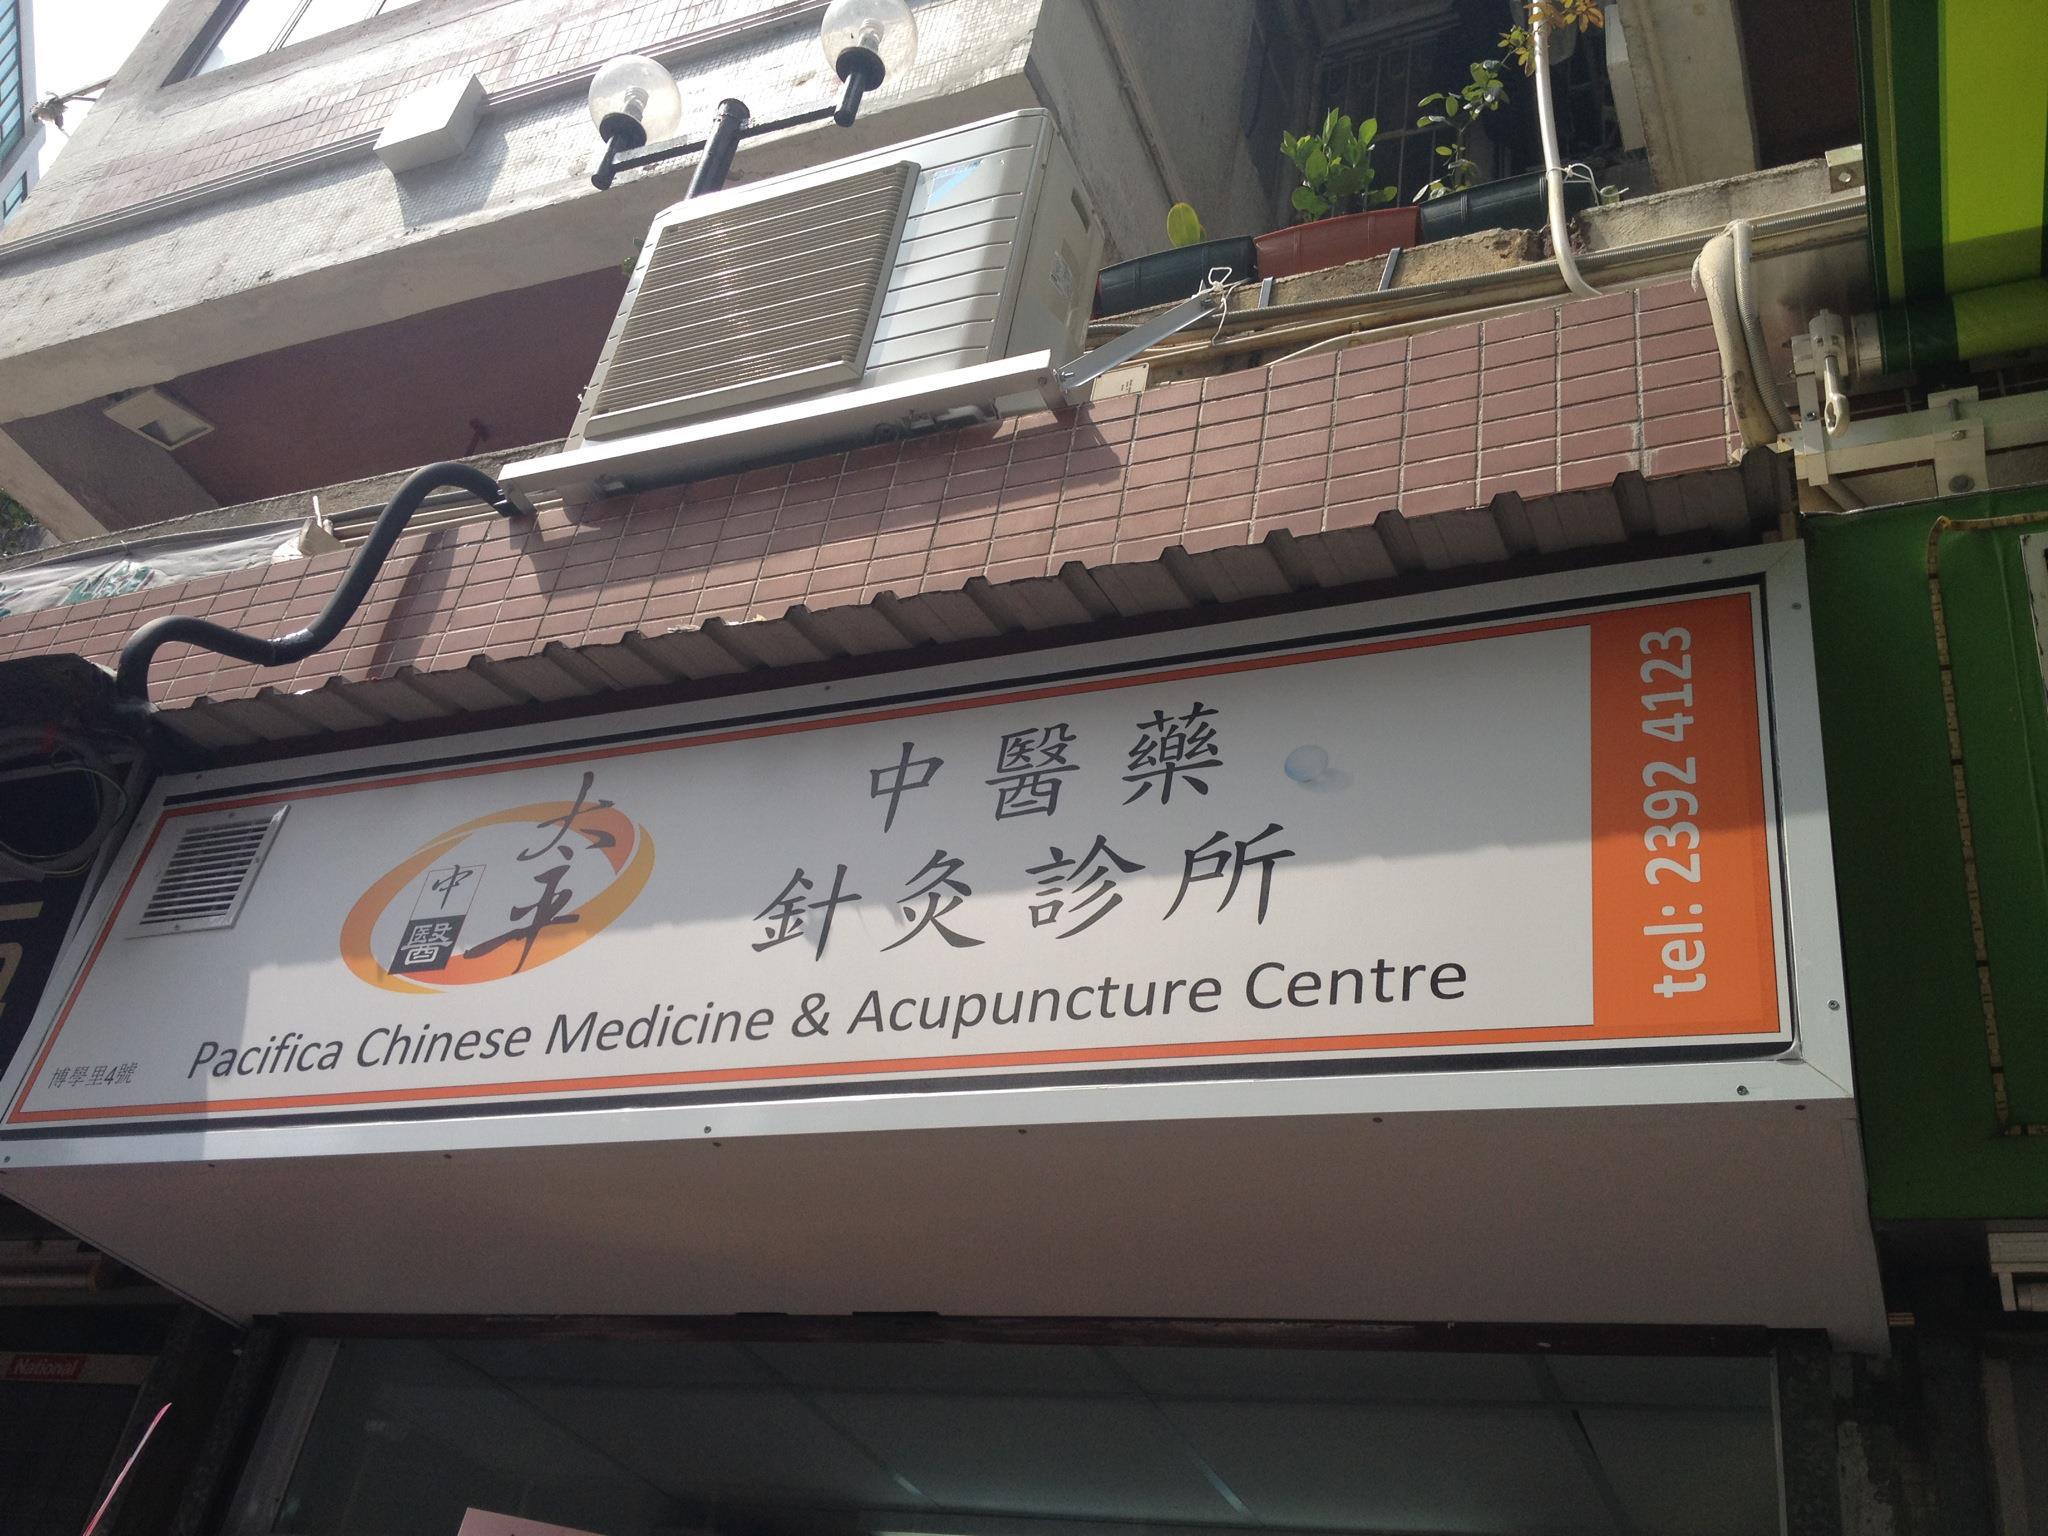 中醫診所: 太平中醫藥針灸診所